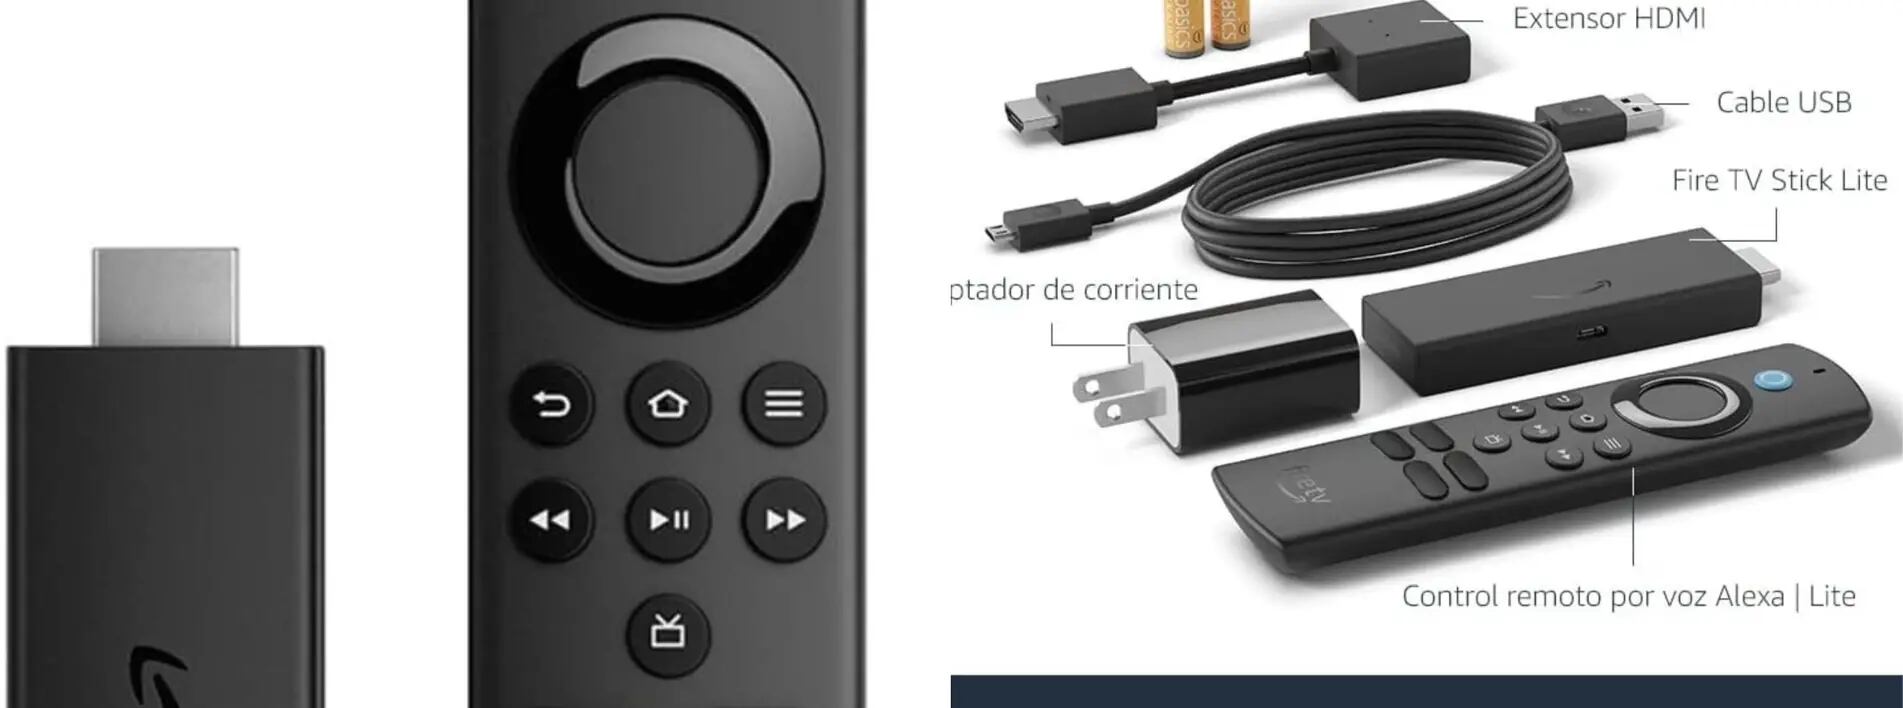 Fire TV Stick Lite control remoto por voz Alexa | Lite (no controla  la televisión), dispositivo de streaming en HD